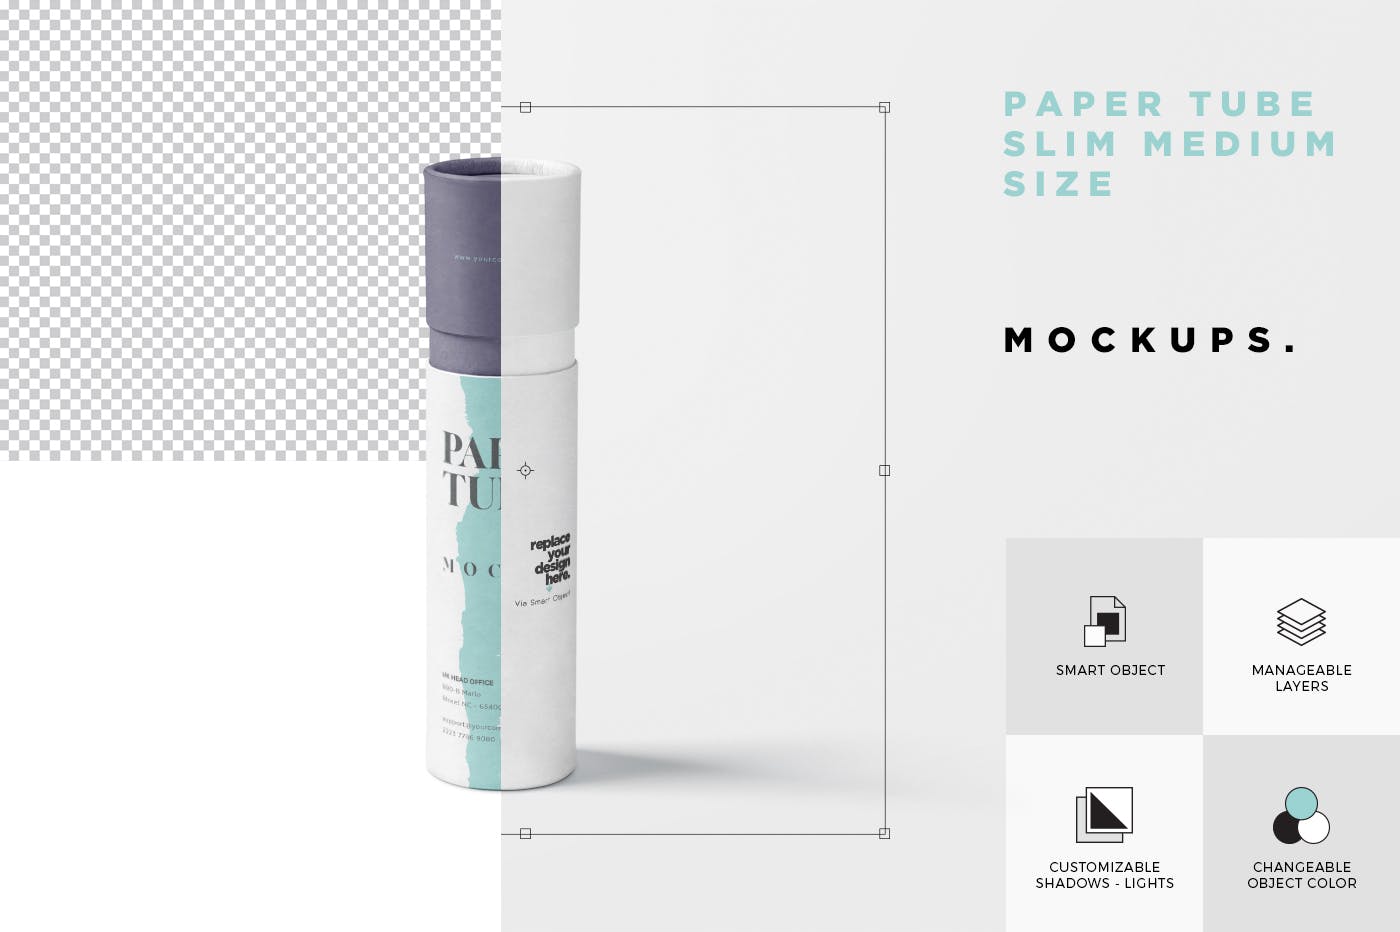 长纸管包装外观设计素材库精选模板 Paper Tube Mockup Set – Slim Medium Size插图(6)